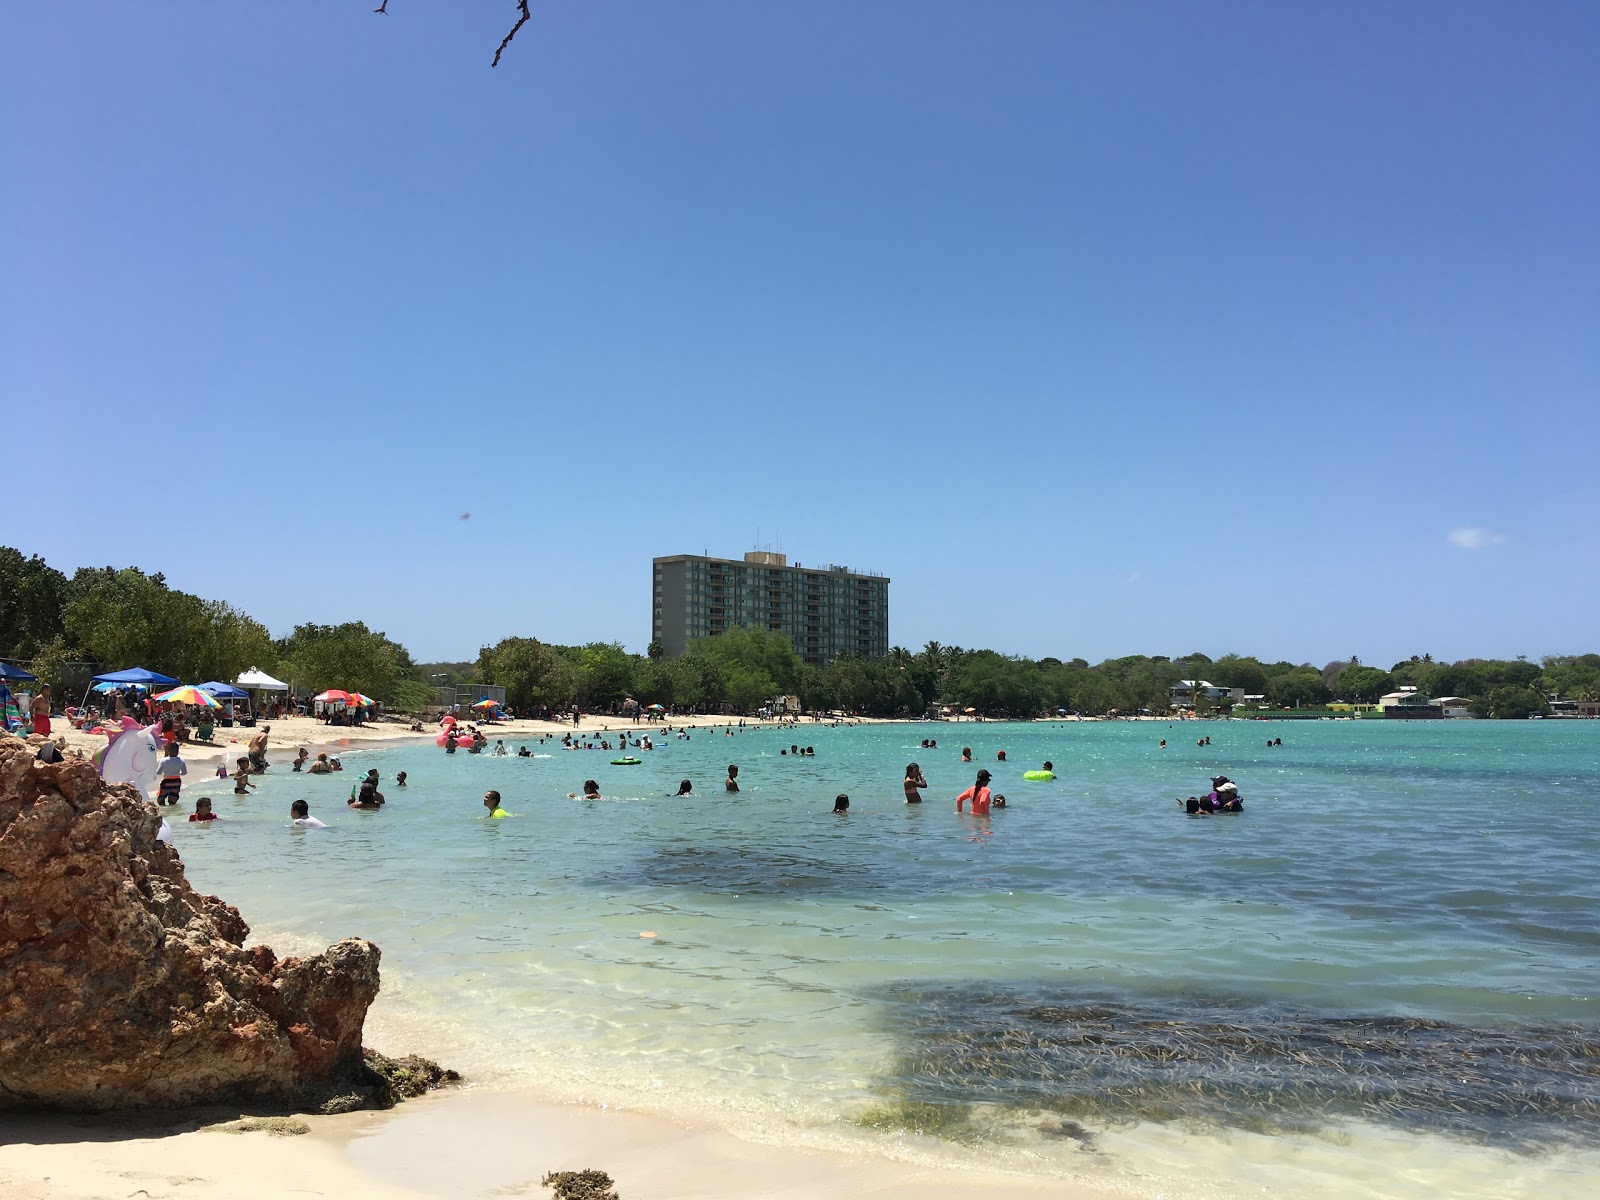 Zdjęcie Plaża Santa - popularne miejsce wśród znawców relaksu